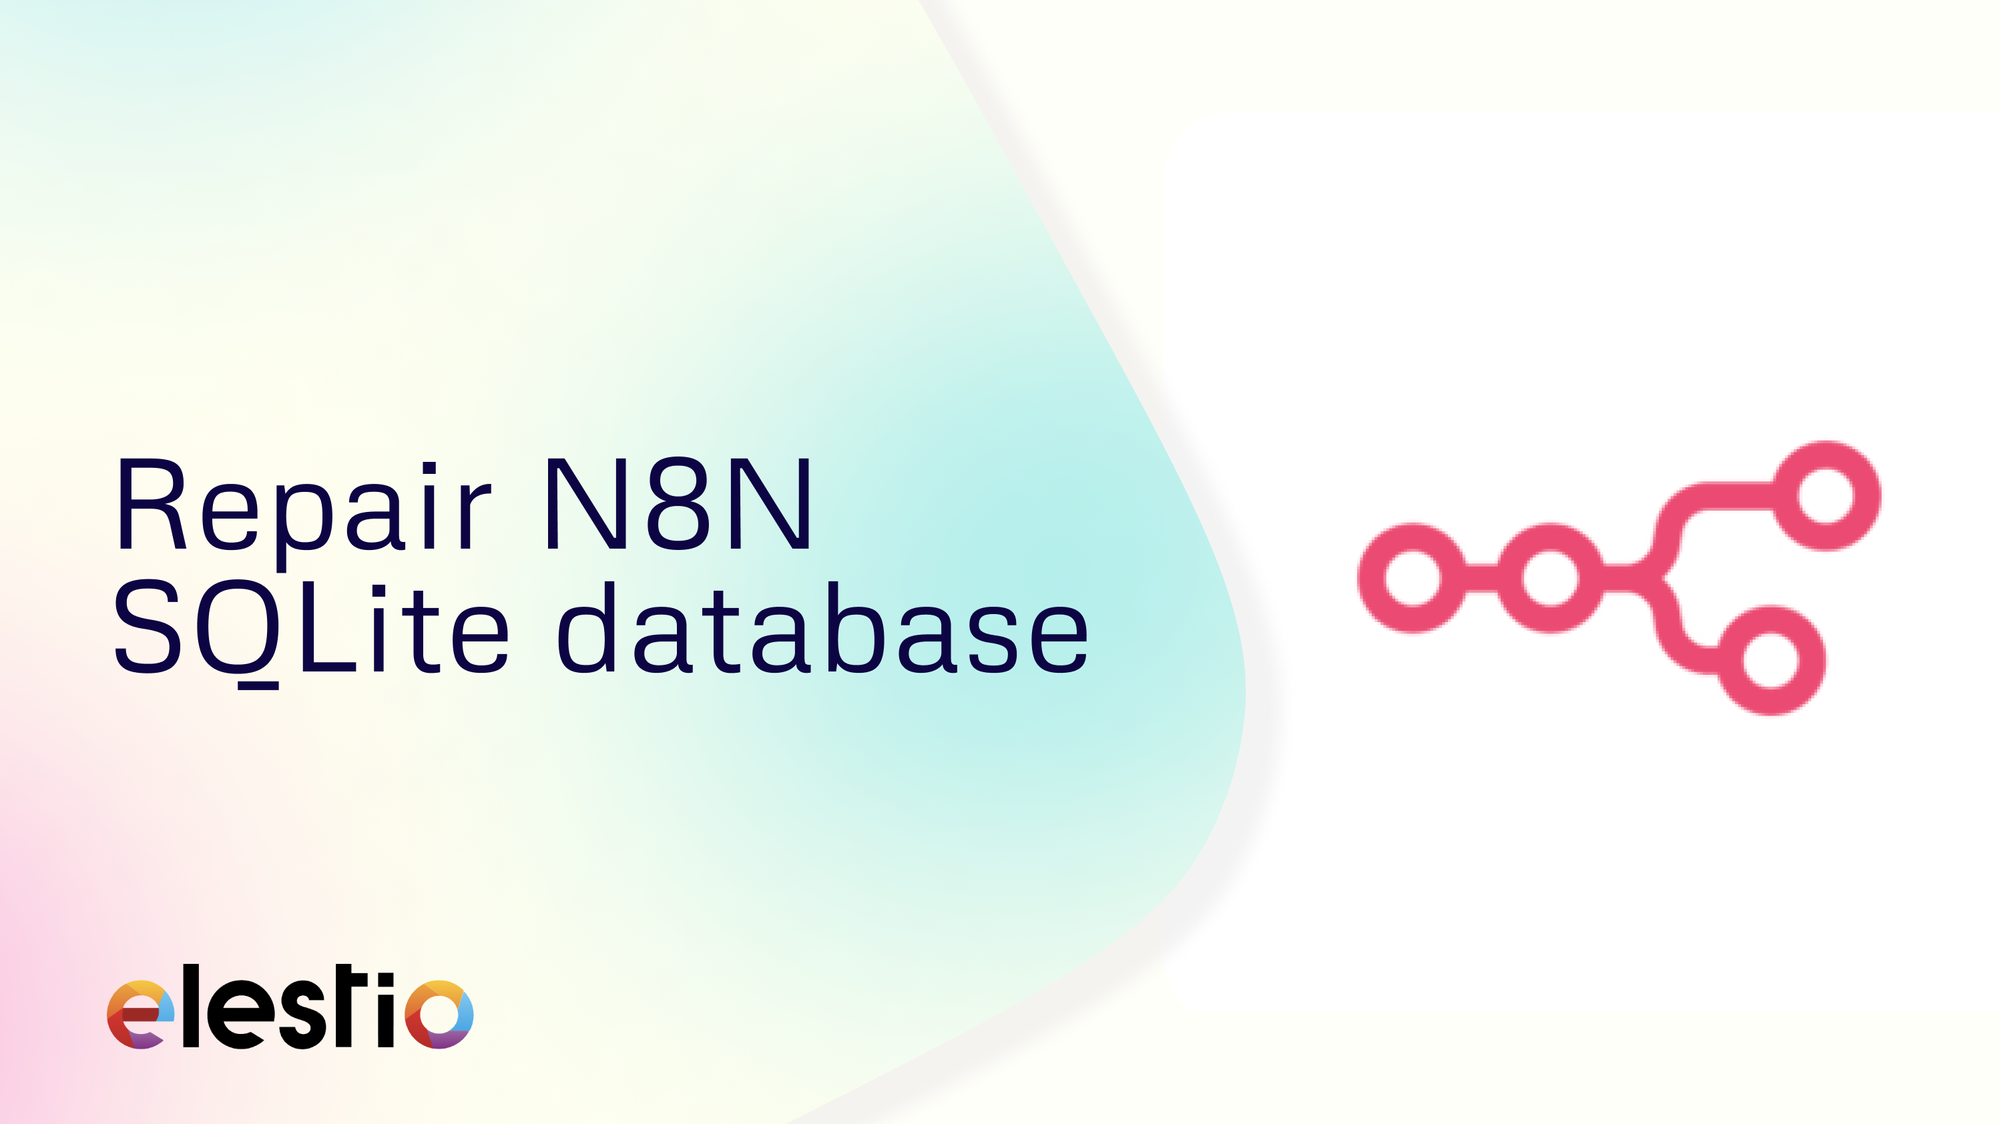 Repair N8N SQLite database